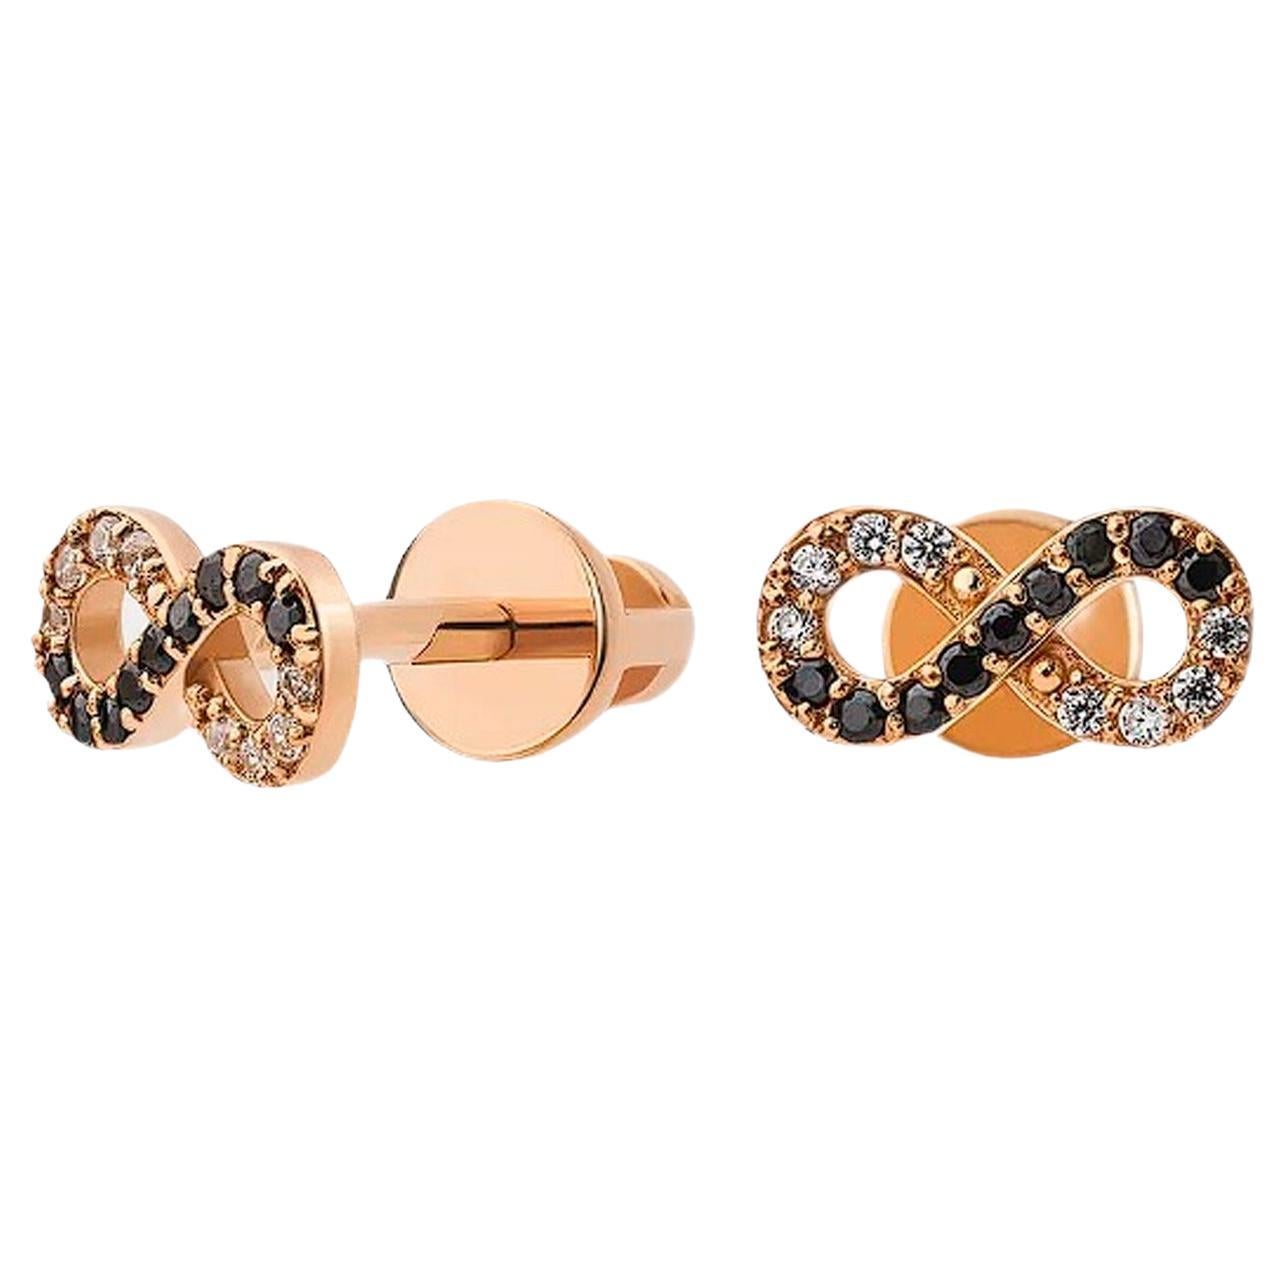 Infinity earrings studs in 14k gold.